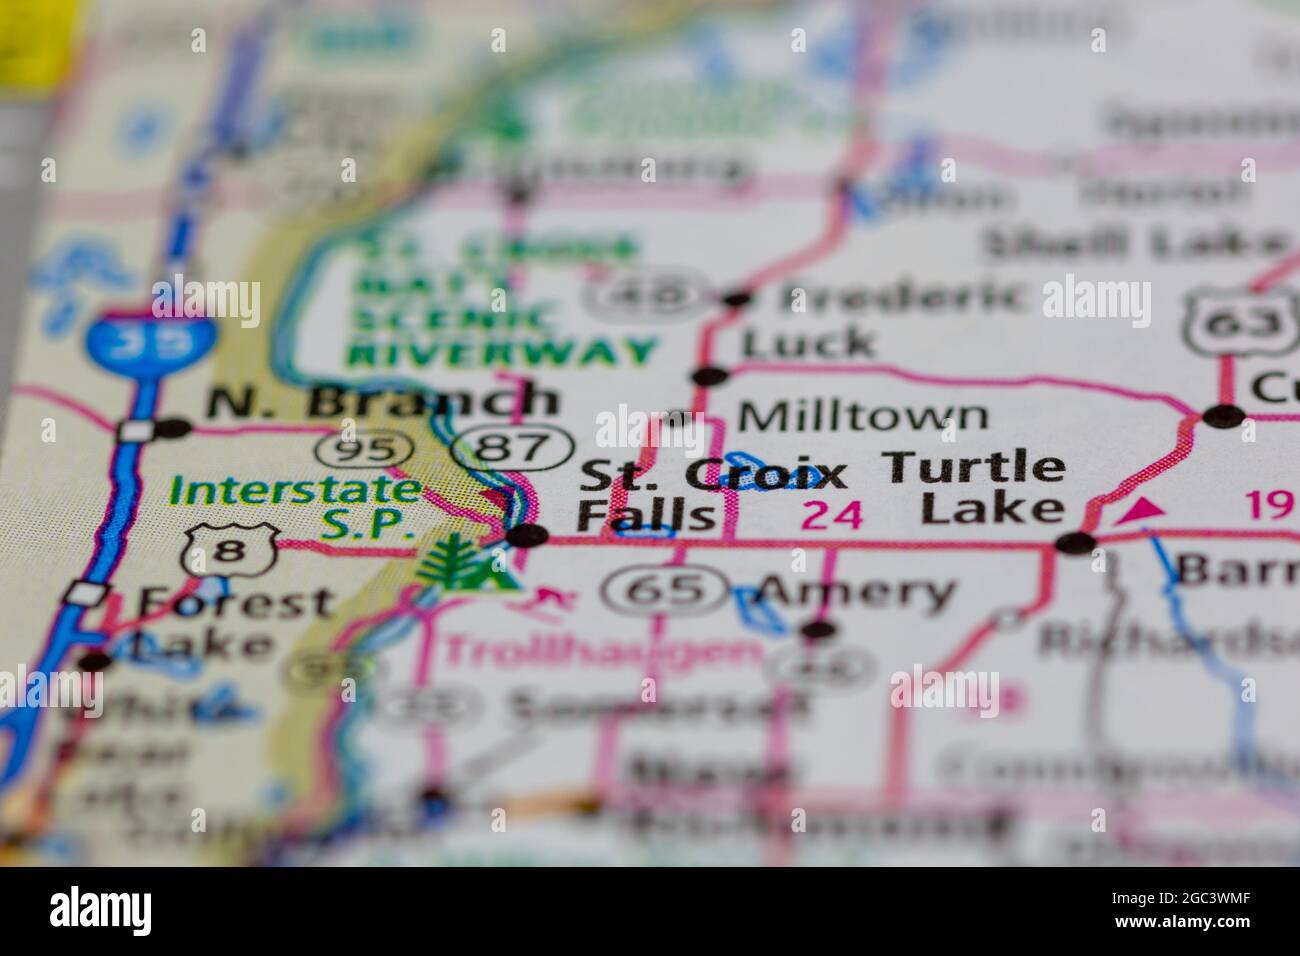 St Croix Falls Wisconsin USA auf einer Straßenkarte oder Geographie-Karte angezeigt Stockfoto